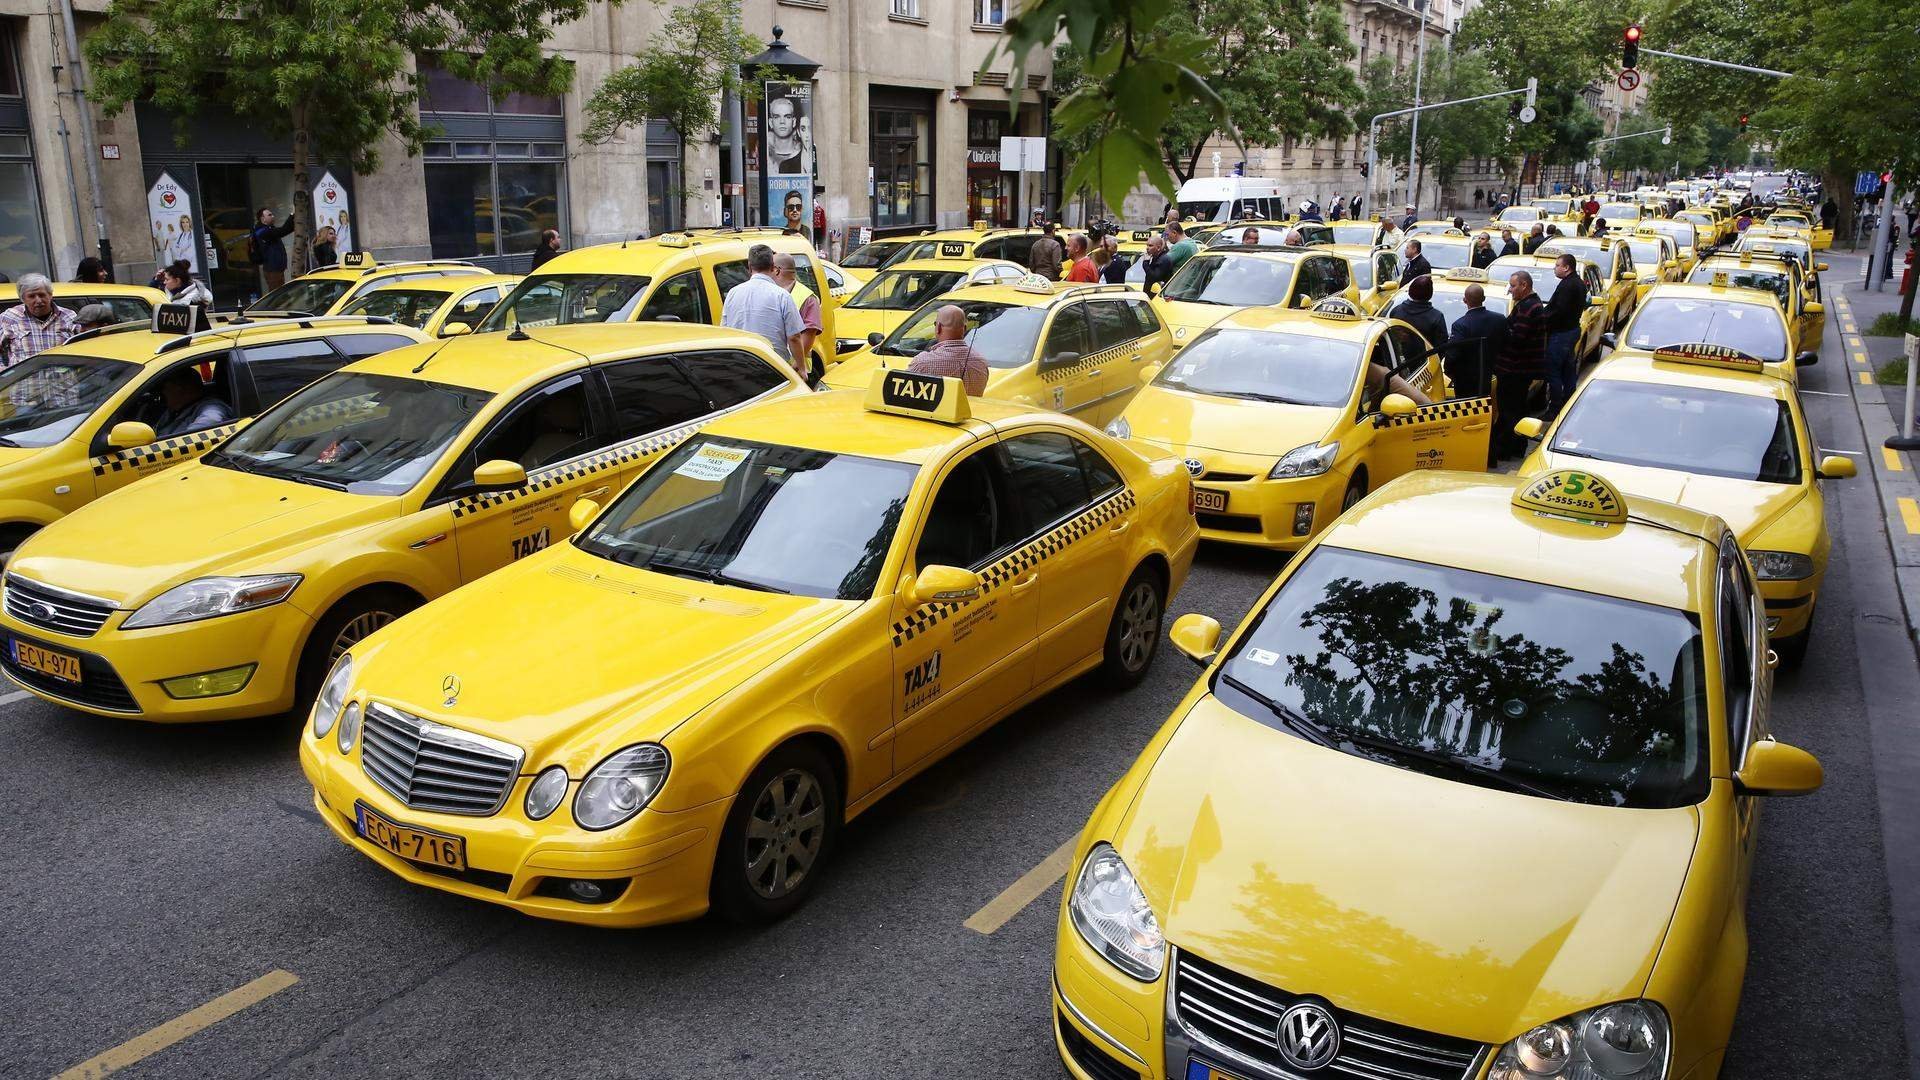 Таксопарк фото. Такси. Такси фото. Лизинг такси. Желтая машина такси.